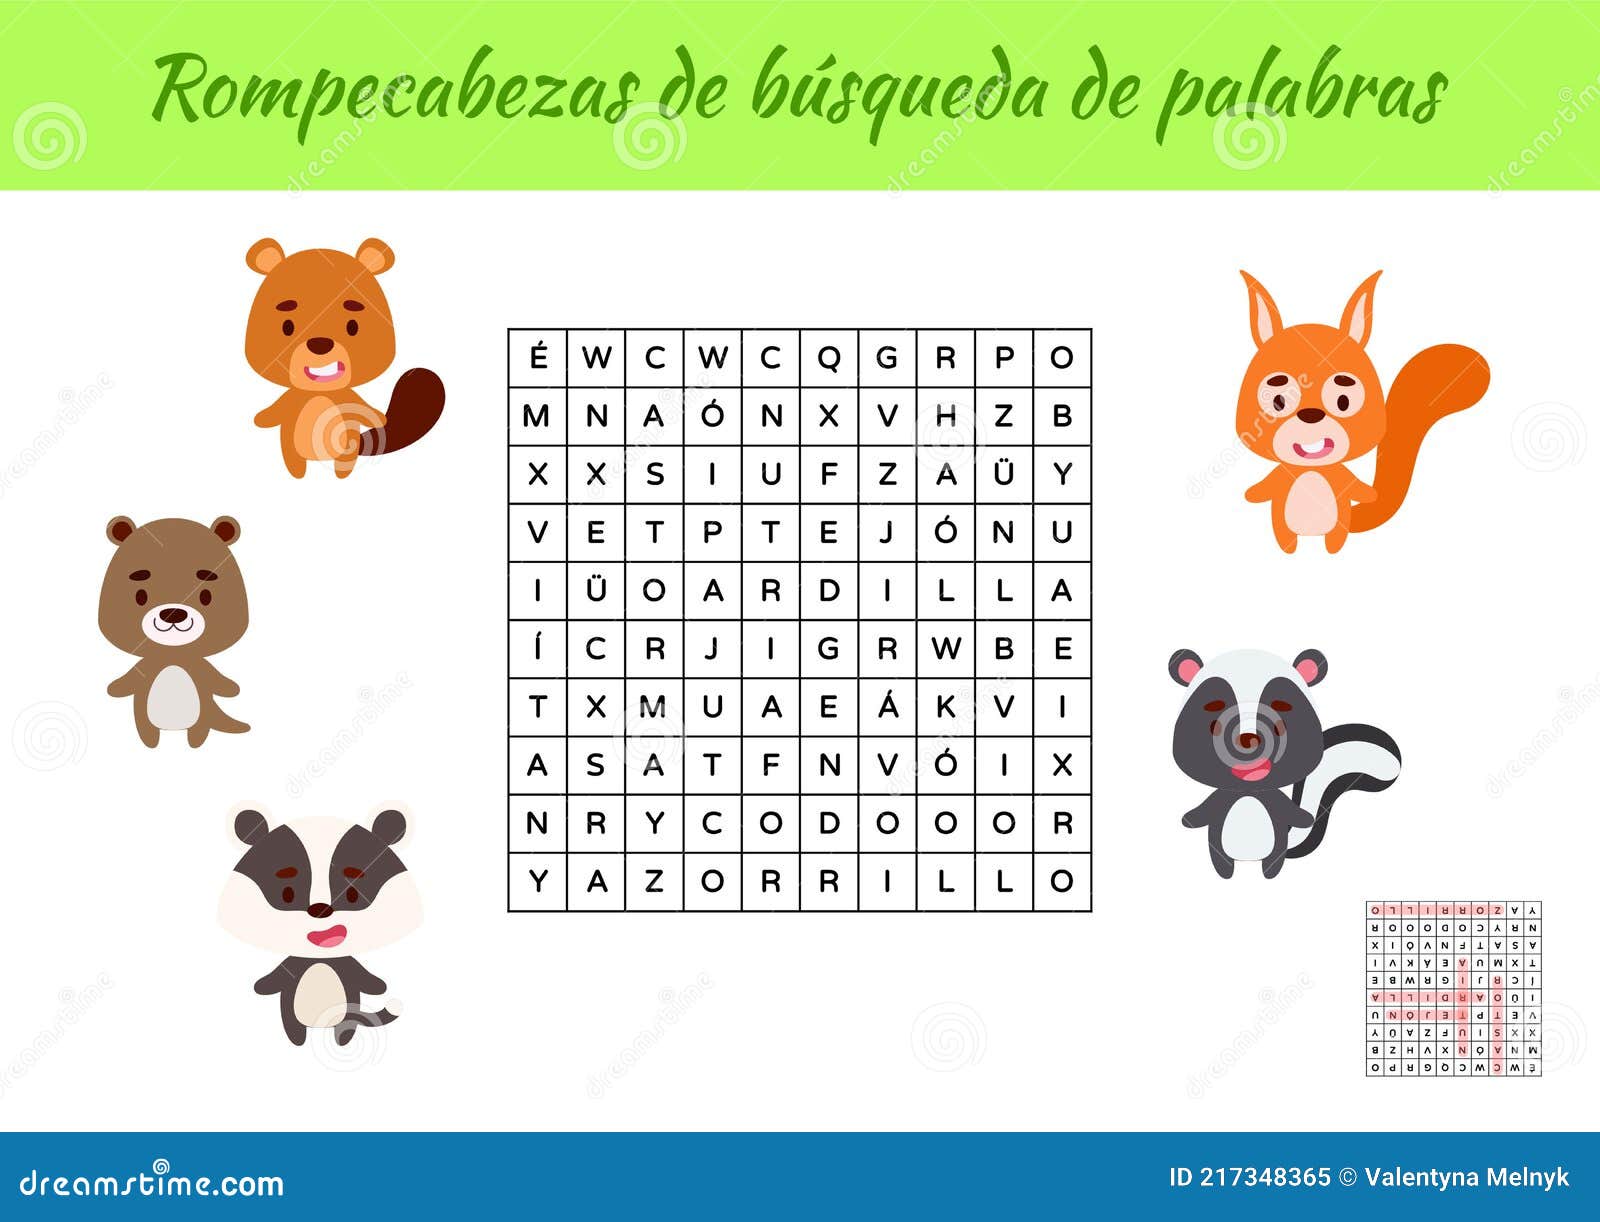 rompecabezas de bÃÂºsqueda de palabras - word search puzzle. educational game for study spanish words. kids activity worksheet